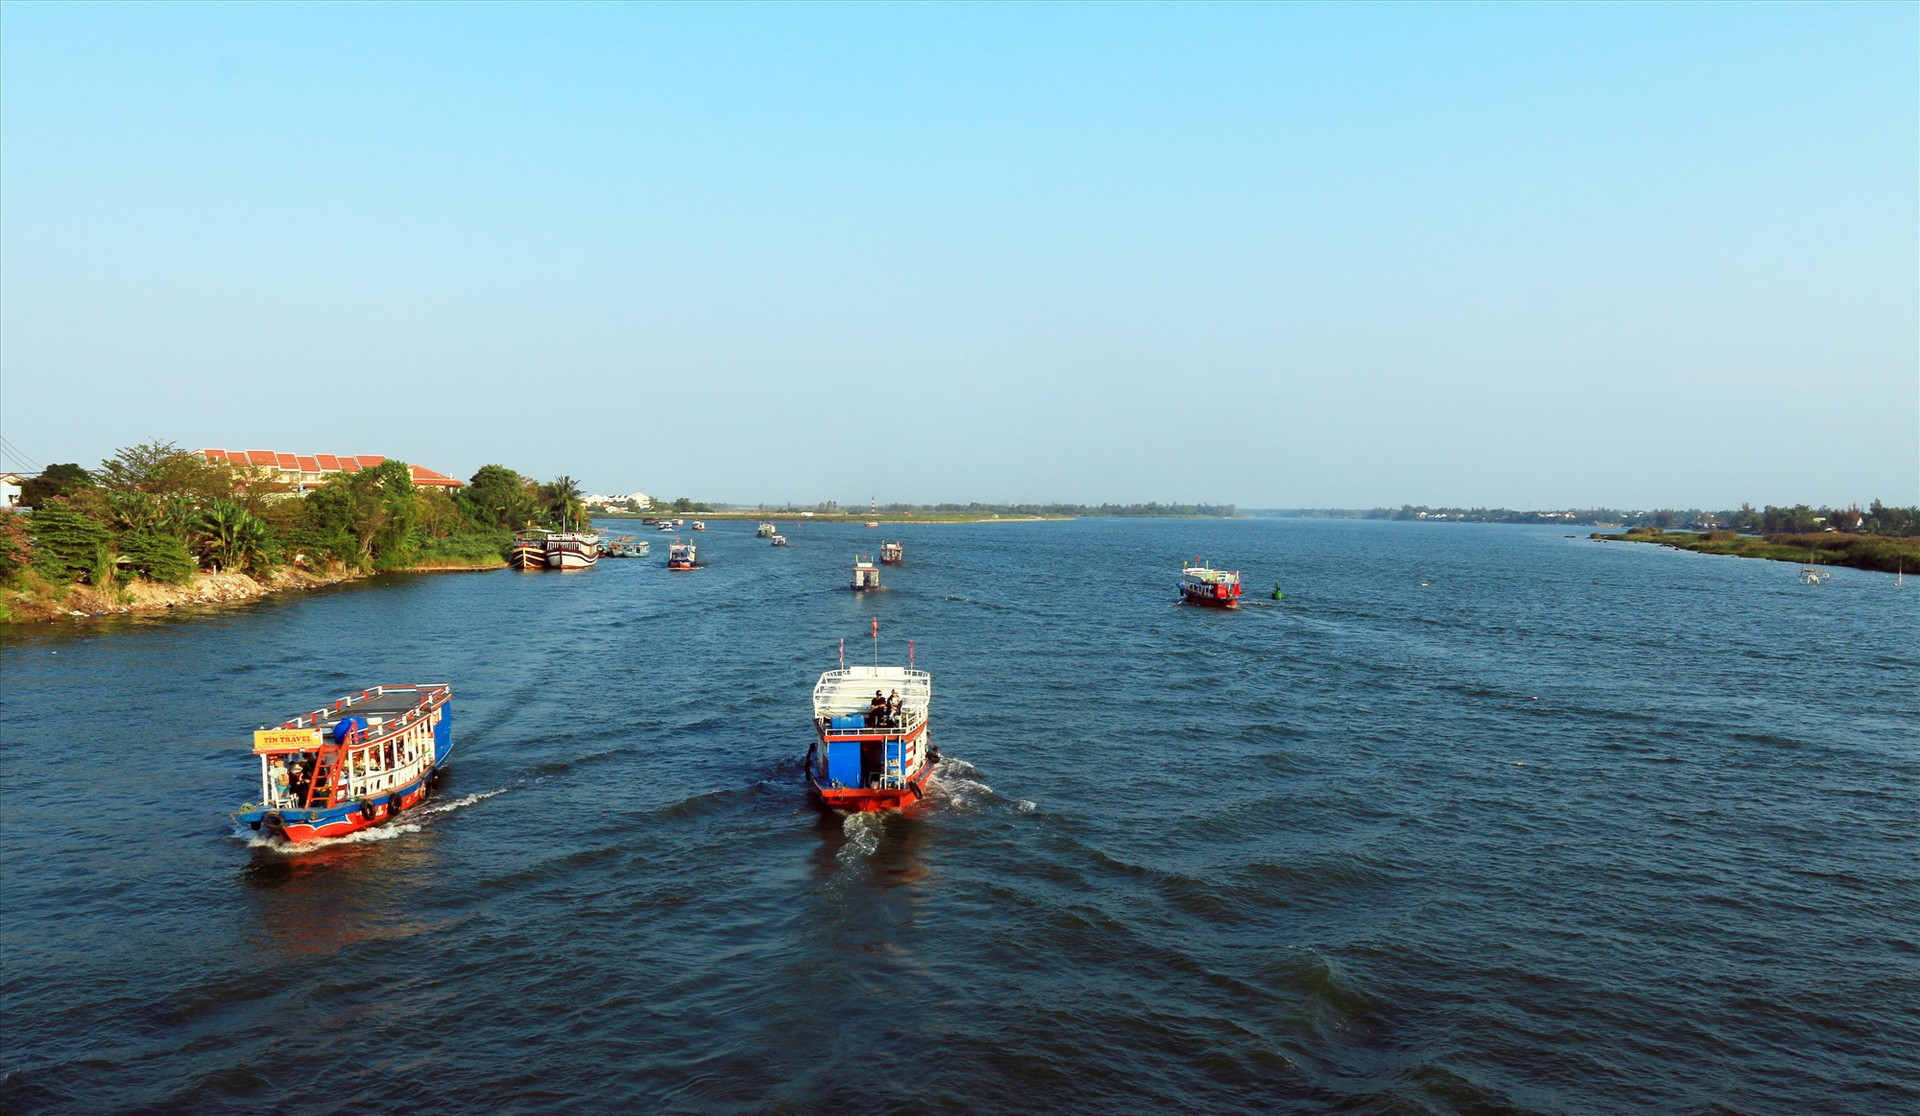 Phát triển sâu hơn các tuyến du lịch ven sông sẽ khiến du lịch Quảng Nam có nhiều điểm nhấn. Ảnh: L.T.K